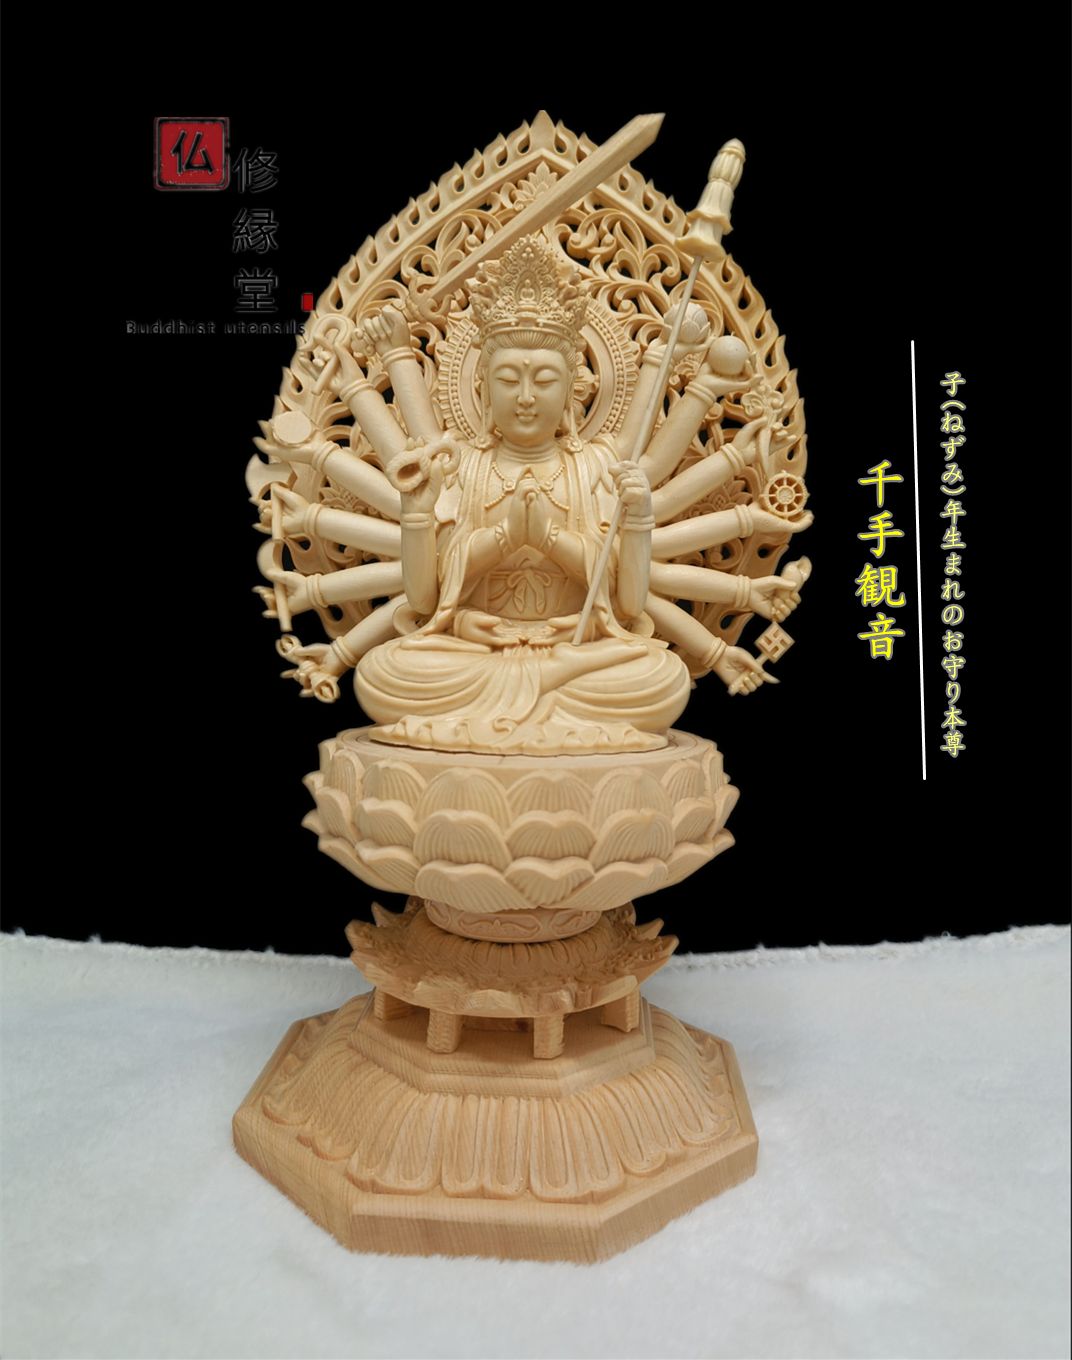 修縁堂】大型高53cm 木彫仏像 地蔵王菩薩立像 本金 切金 彫刻 天然木檜